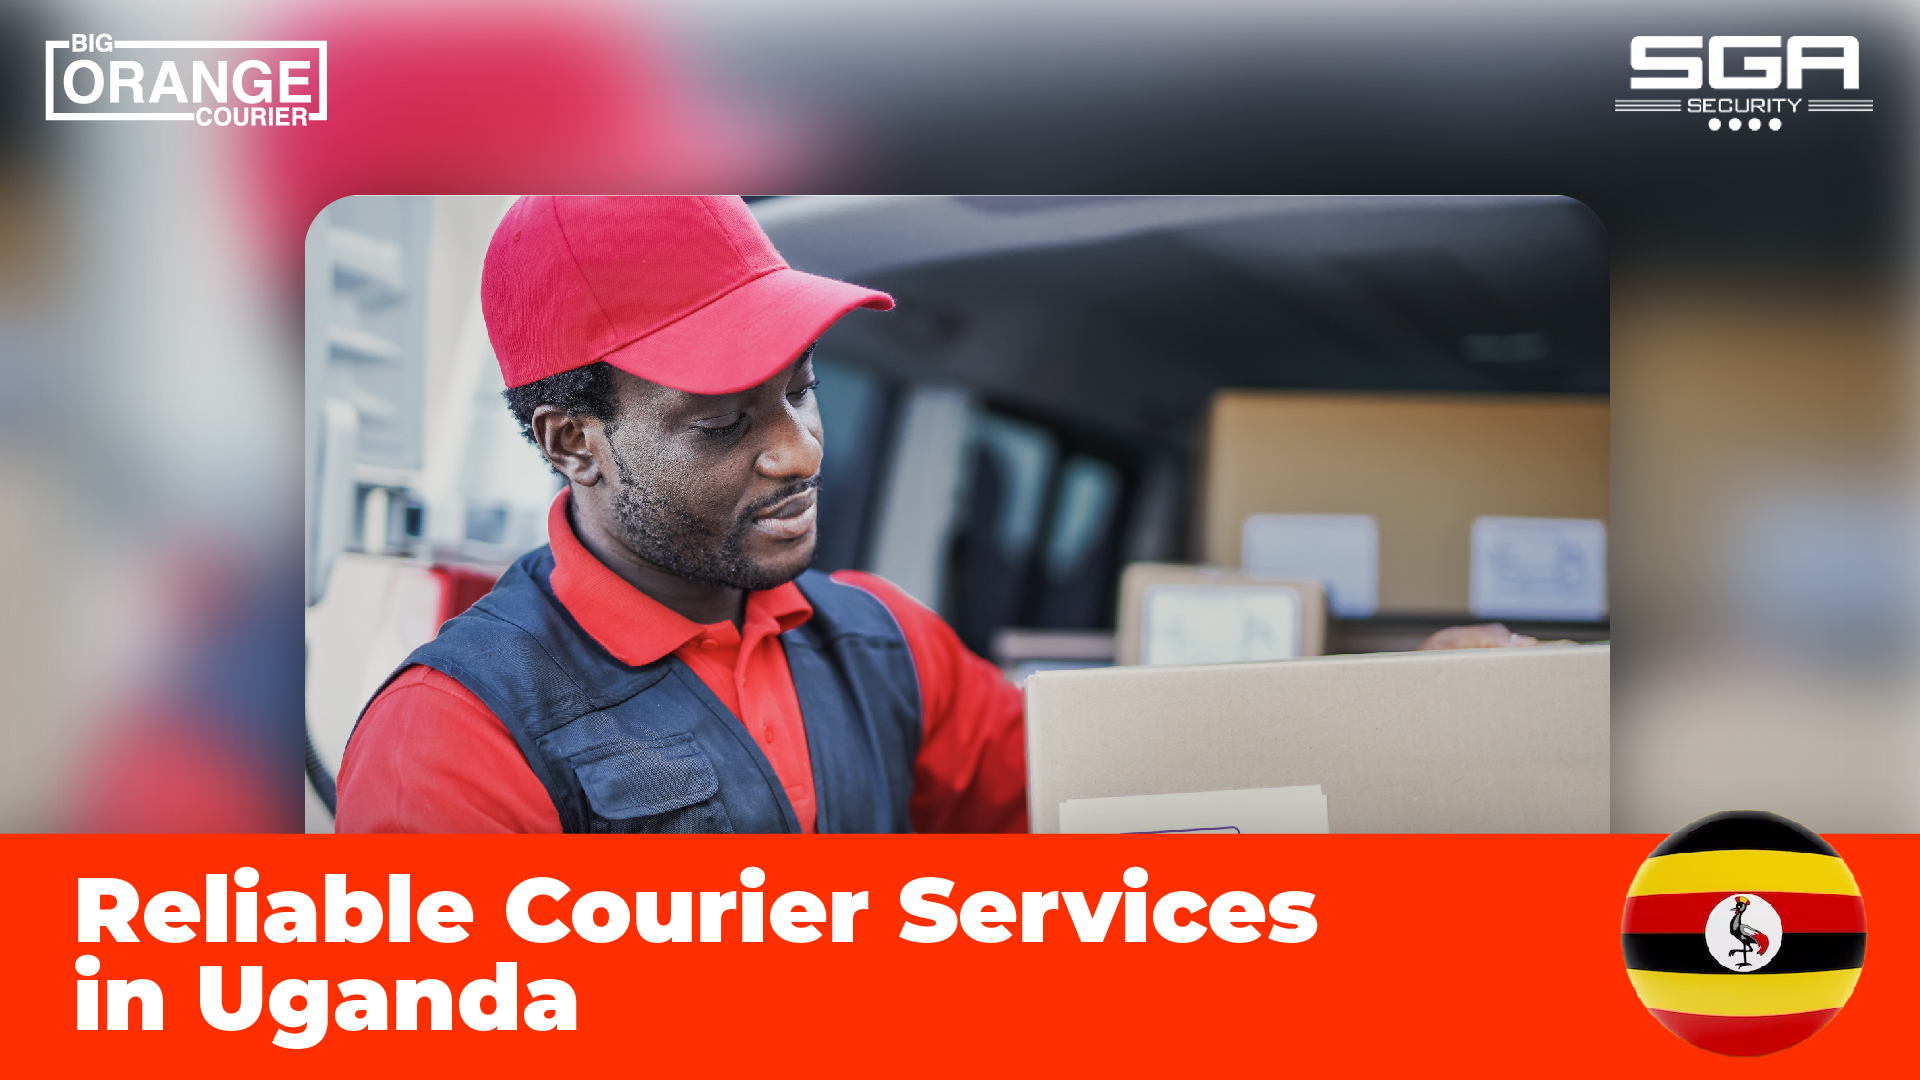 Ugandan courier worker